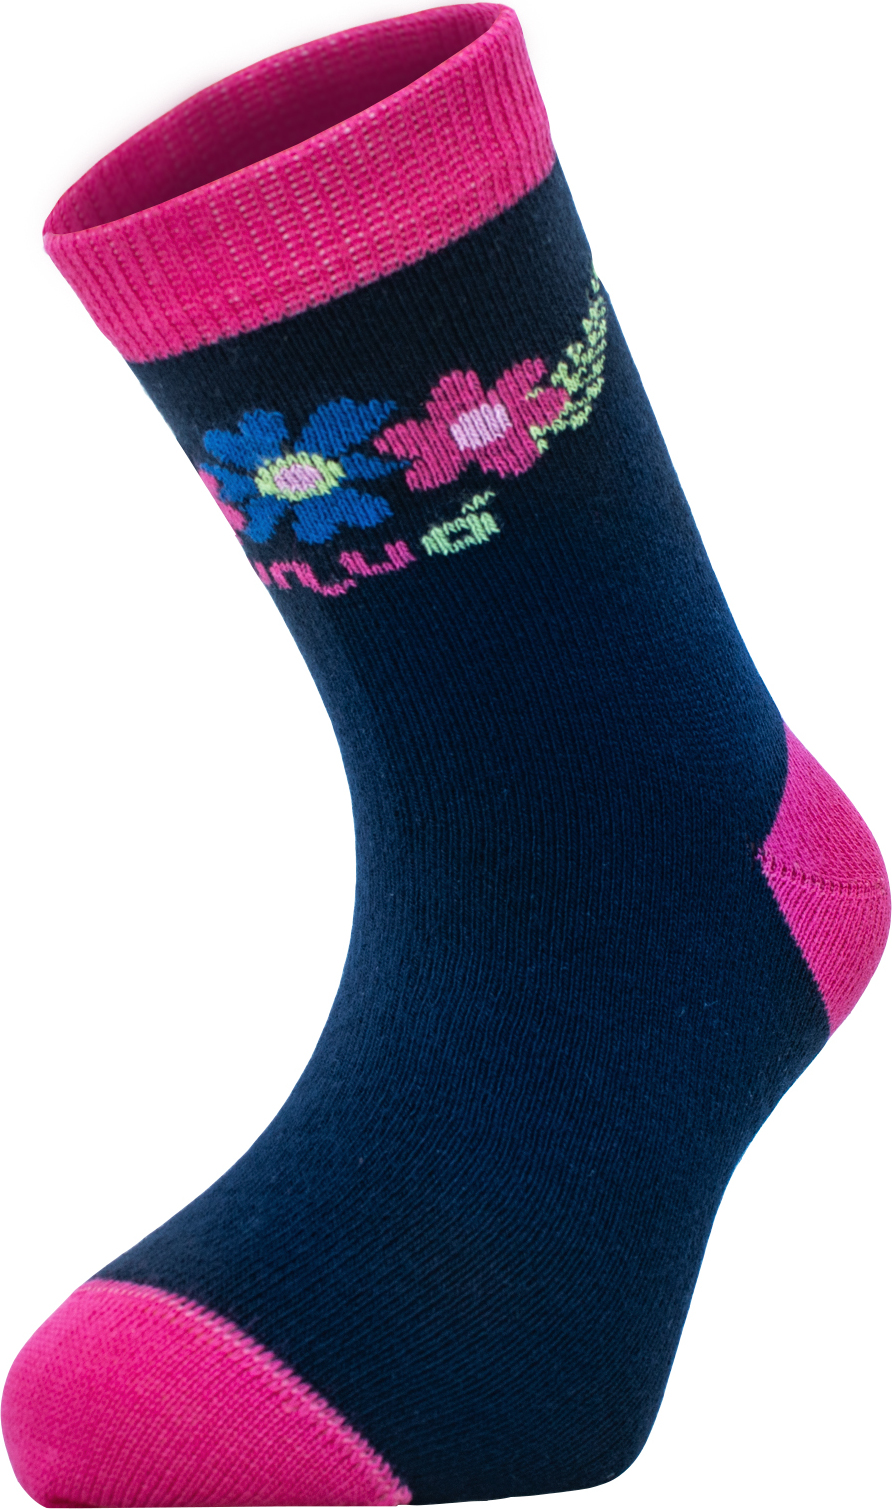 Bambusové ponožky UNUO Květinky (Bamboo socks printed) Velikost ponožky, punčocháče, legíny EU: 24/27